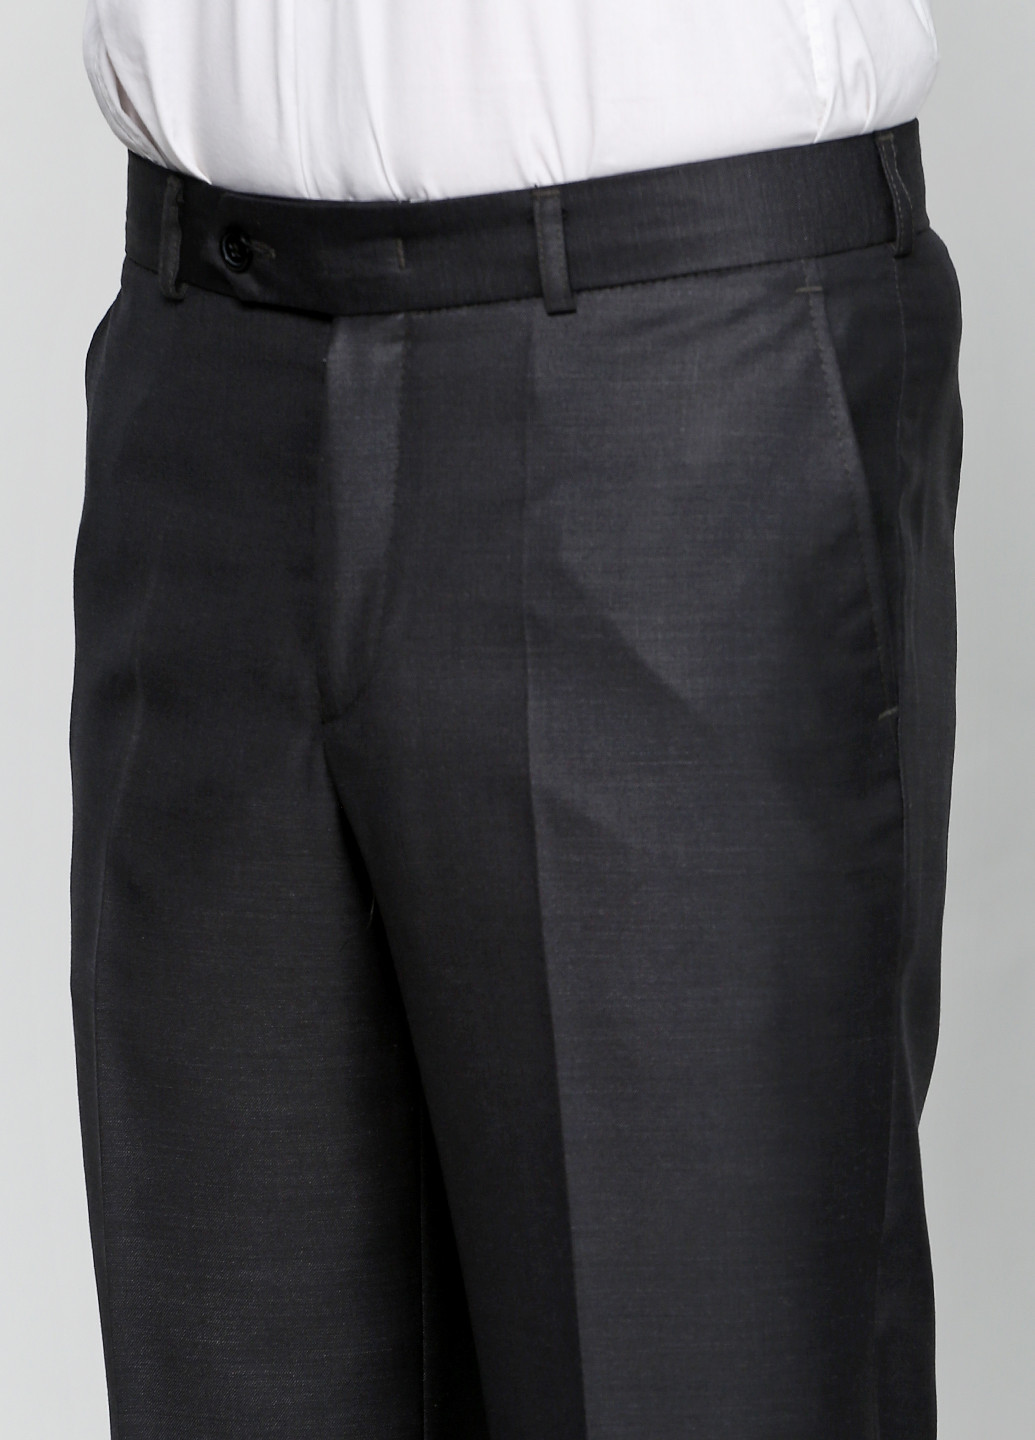 Серый демисезонный костюм (пиджак, брюки) брючный Gentle Man